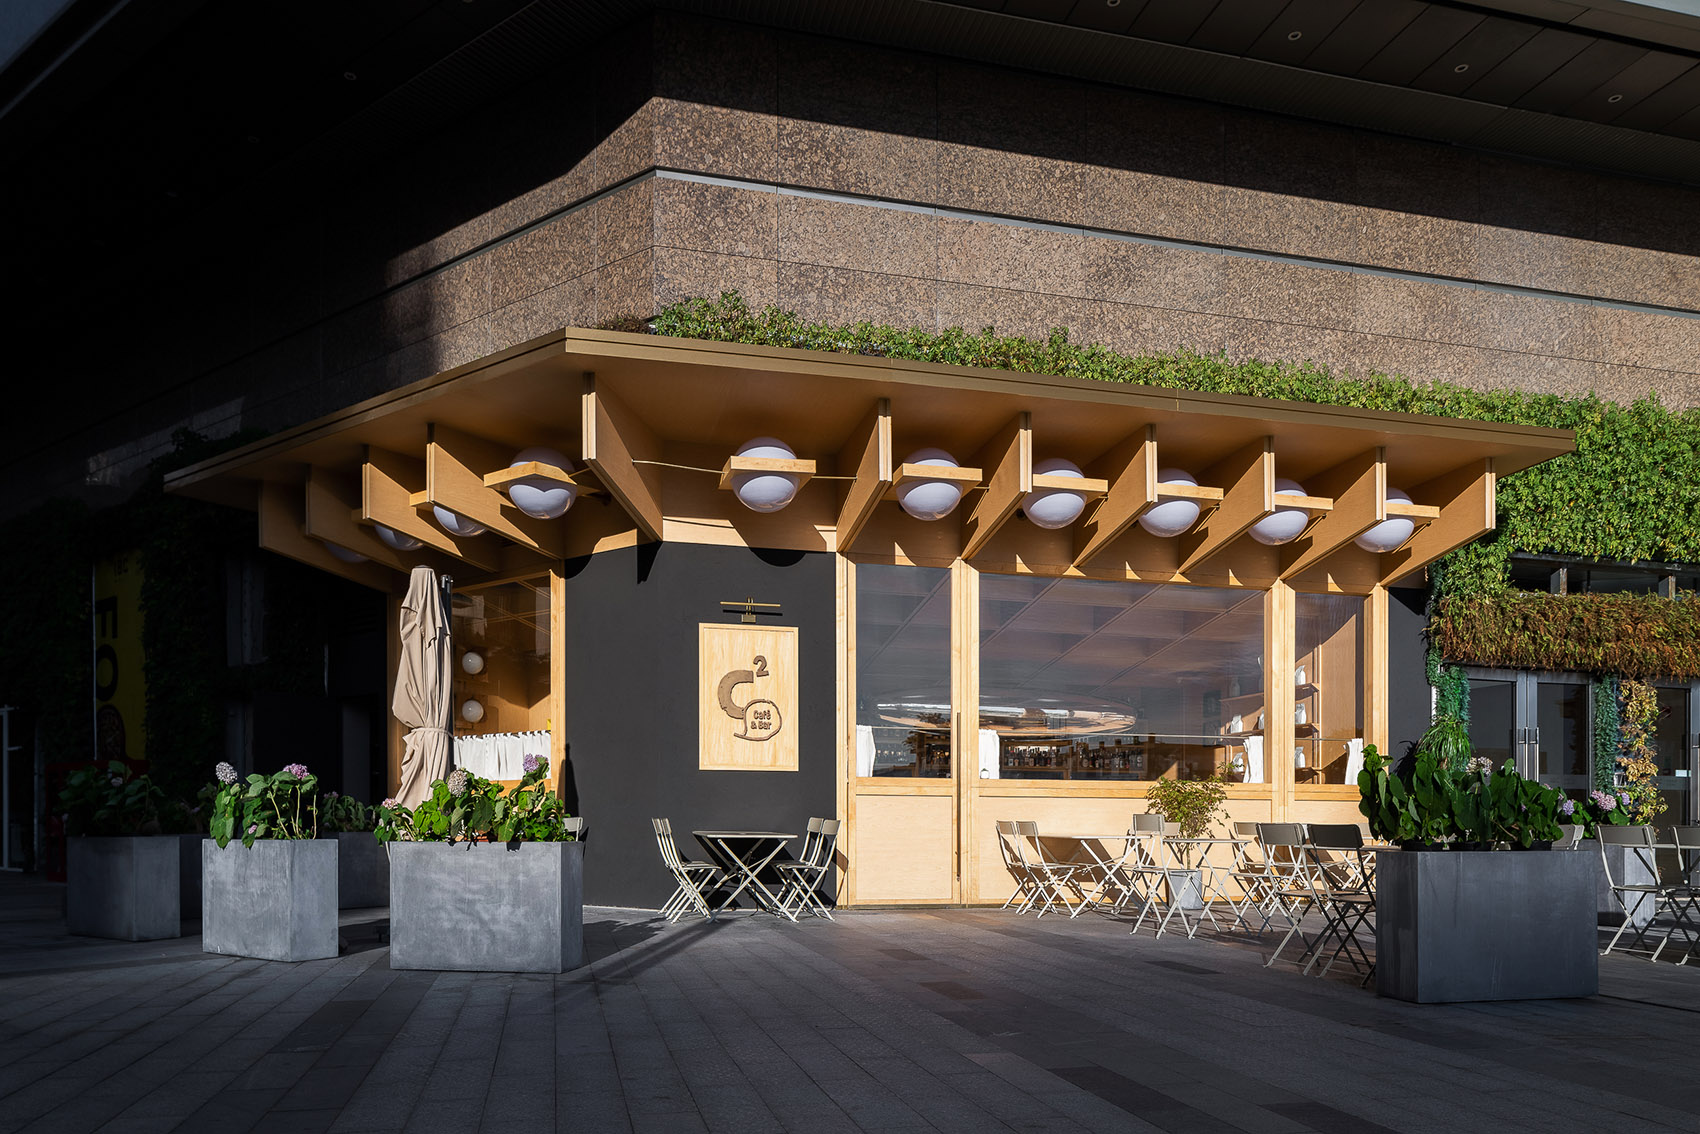 浮廊C2 Cafe &  Bar咖啡厅，深圳/专门为年轻人打造的“空中楼阁”-51